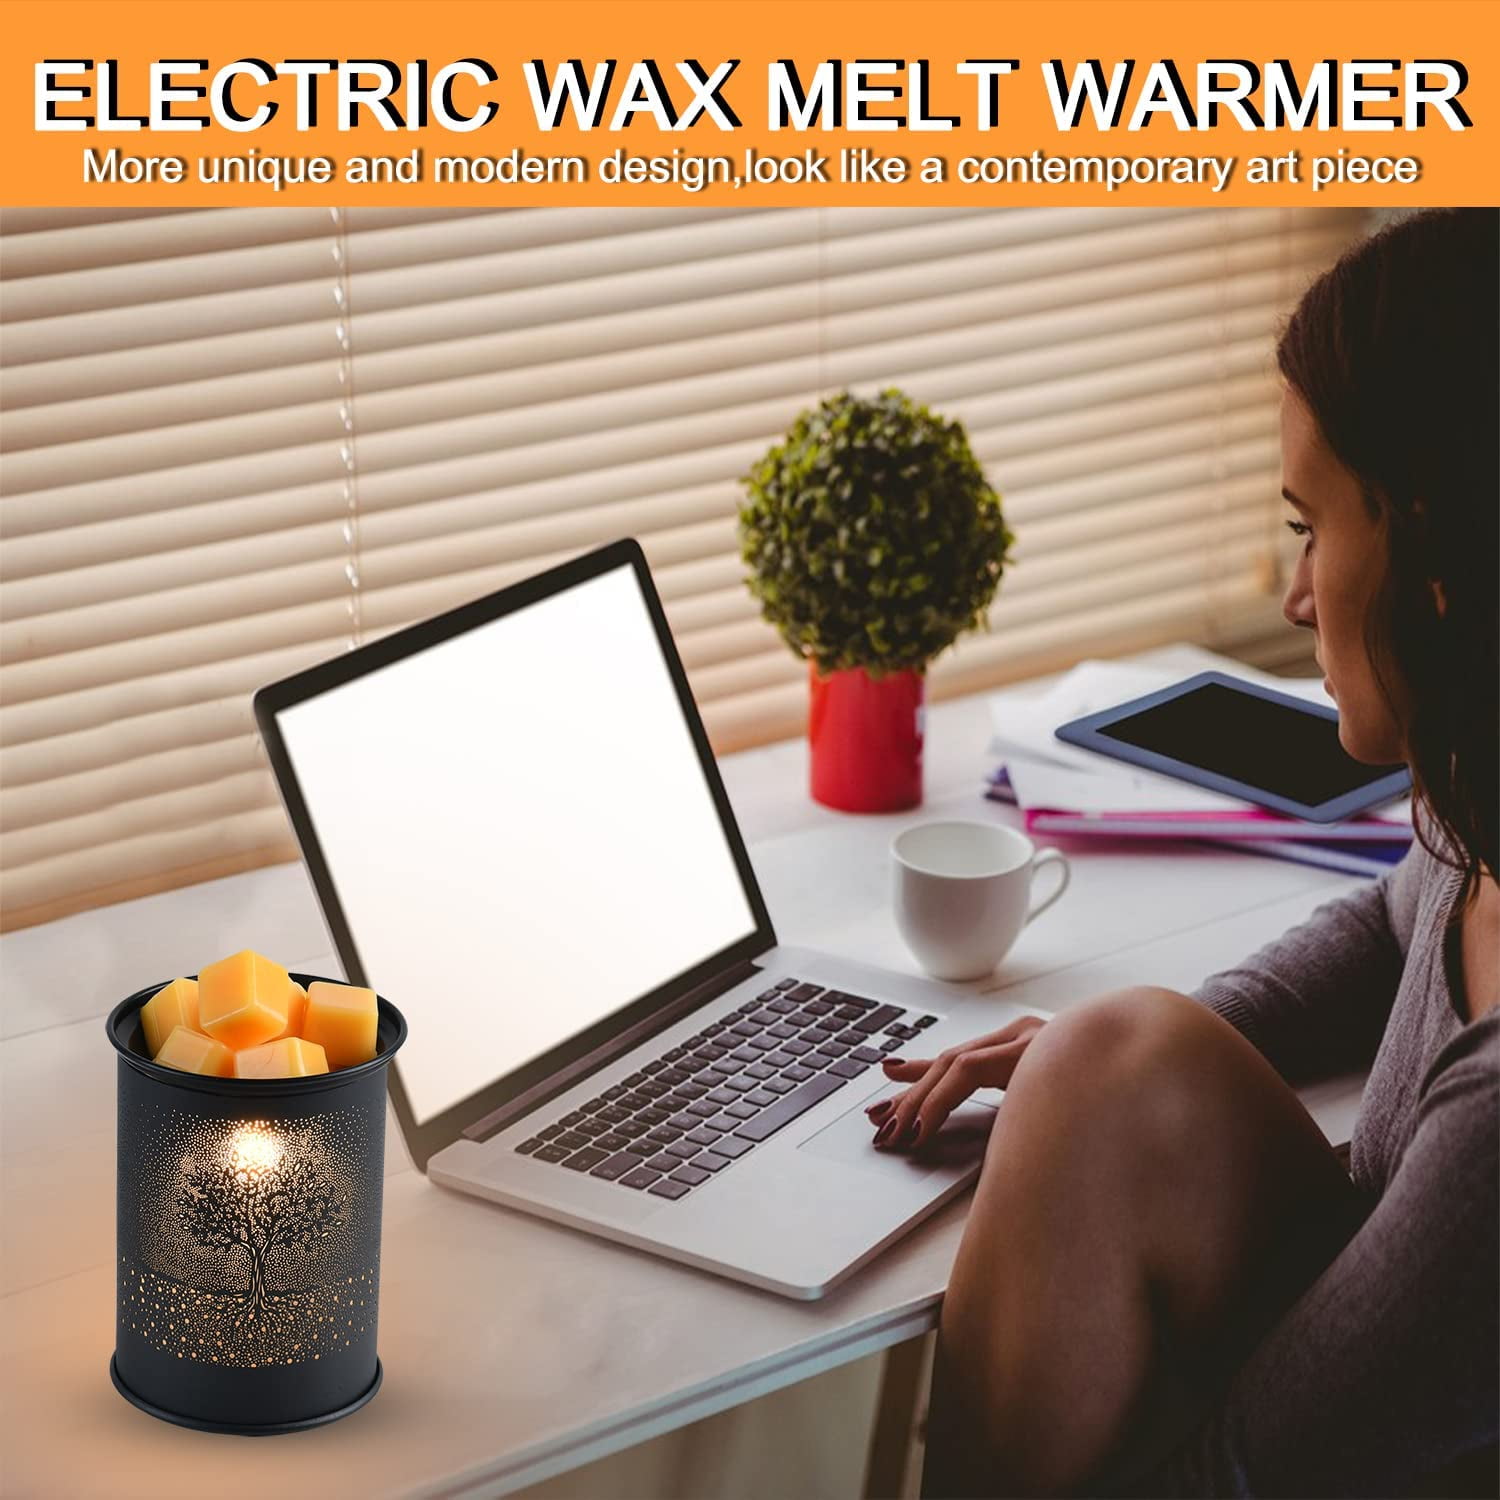 Electric Wax Melt Warmer, Orinx Metal Wax Warmer, Scented Candle